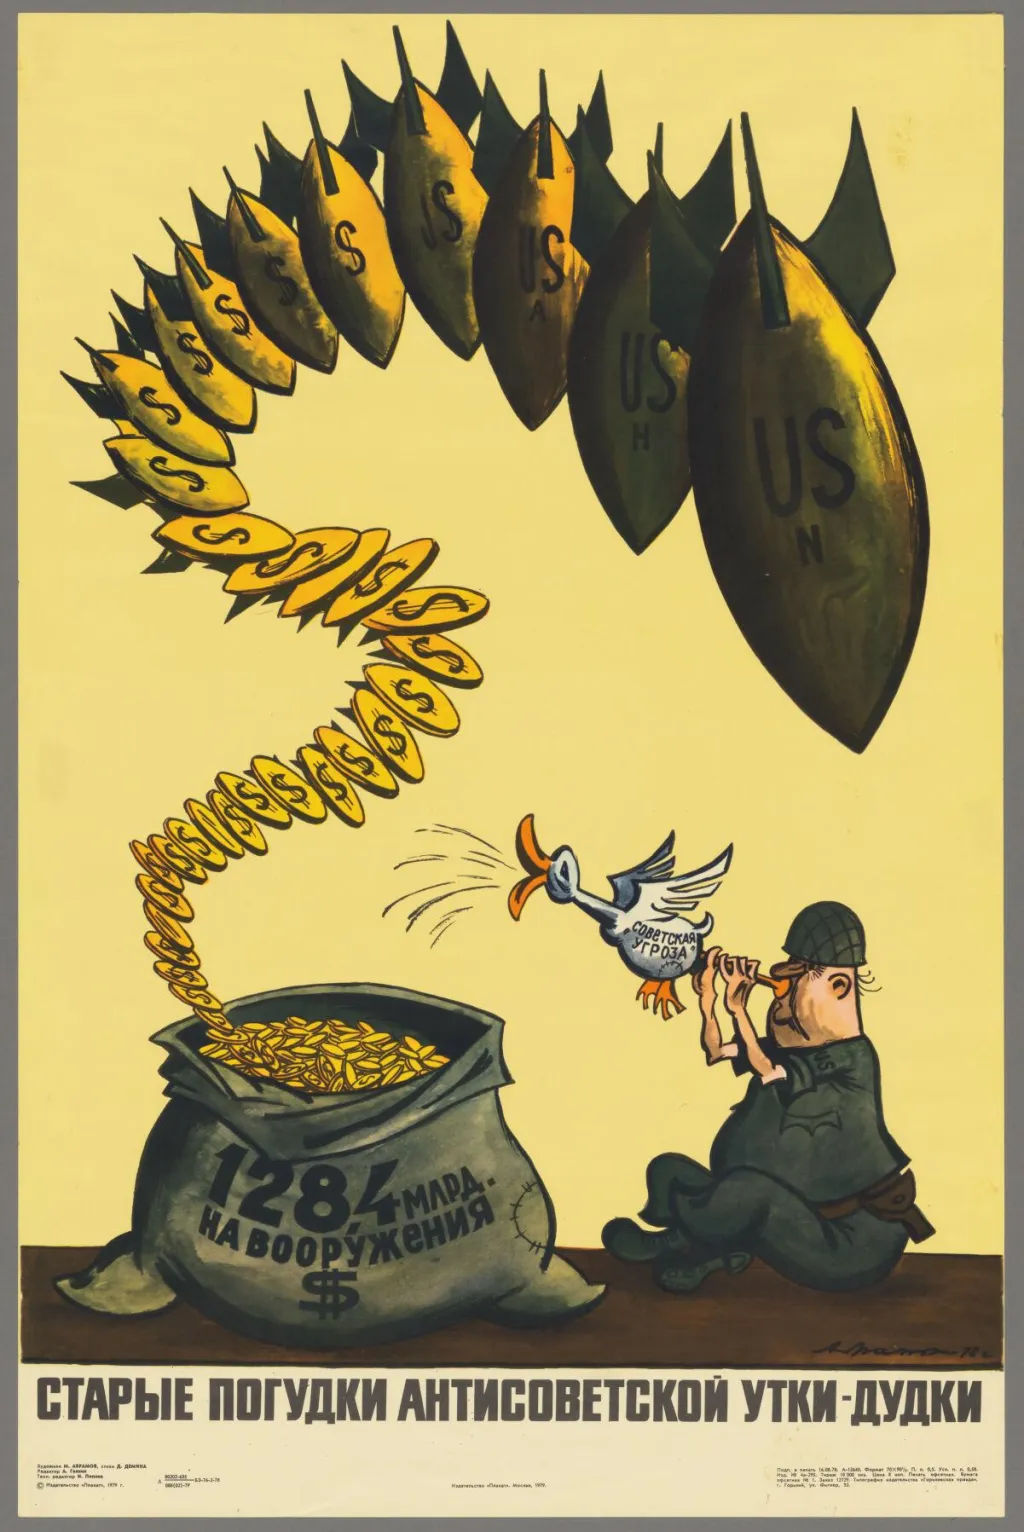 Tento plakát měl za cíl vyvolat v SSSR povědomí o rostoucích výdajích USA na obranu a prodat je jako nebezpečné válečné štvaní, které je v příkrém rozporu se sovětskými výzvami k míru